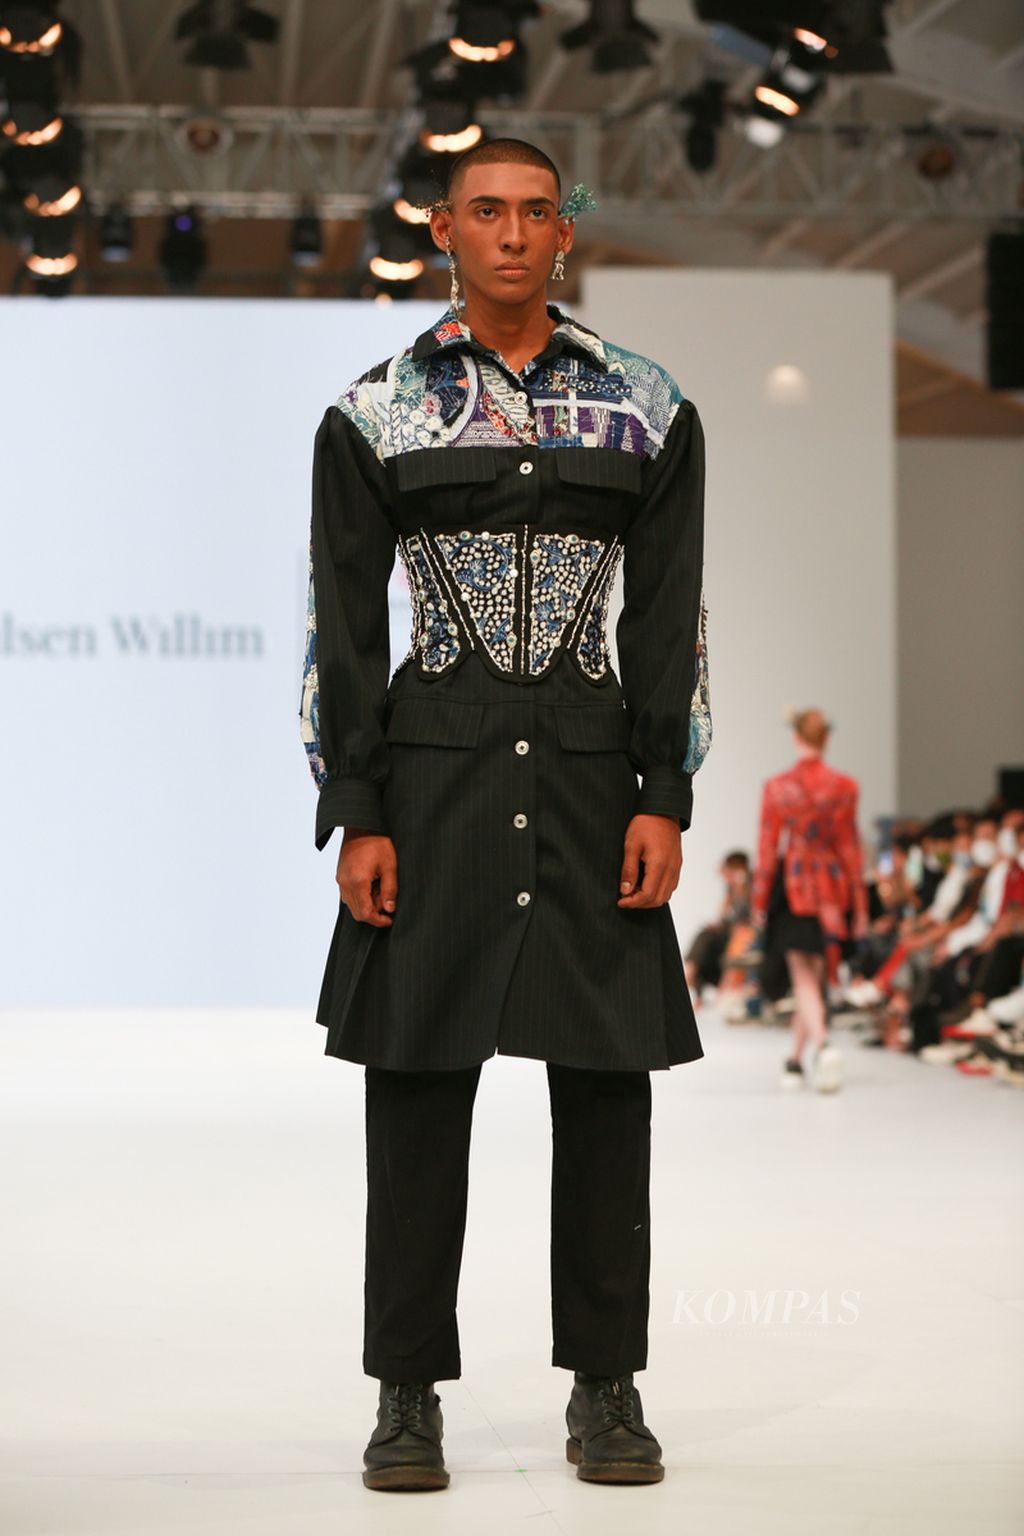  Karya desainer Wilsen Willim kolaborasi dengan Warisan Budaya Indonesia dan Cita Tenun Indonesia di gelaran Jakarta Fashion Week 202, di Pondok Indah Mall, Jakarta. 